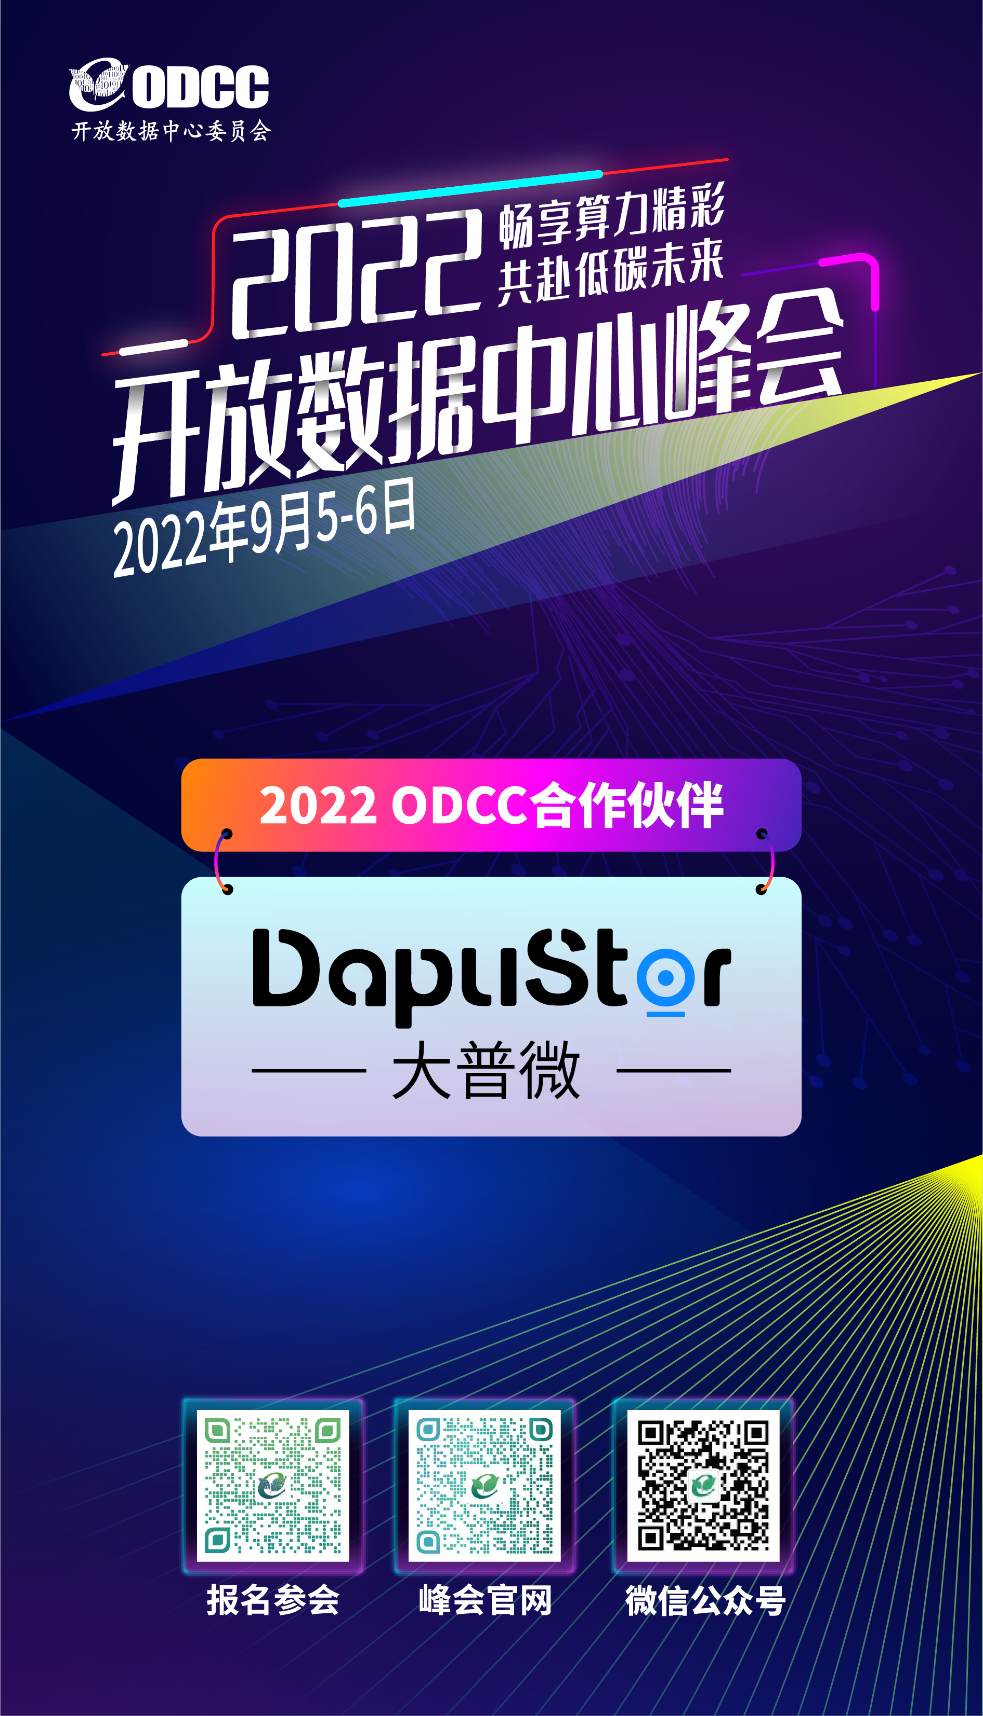 2022开放数据峰会，DapuStor将携新动态现场亮相